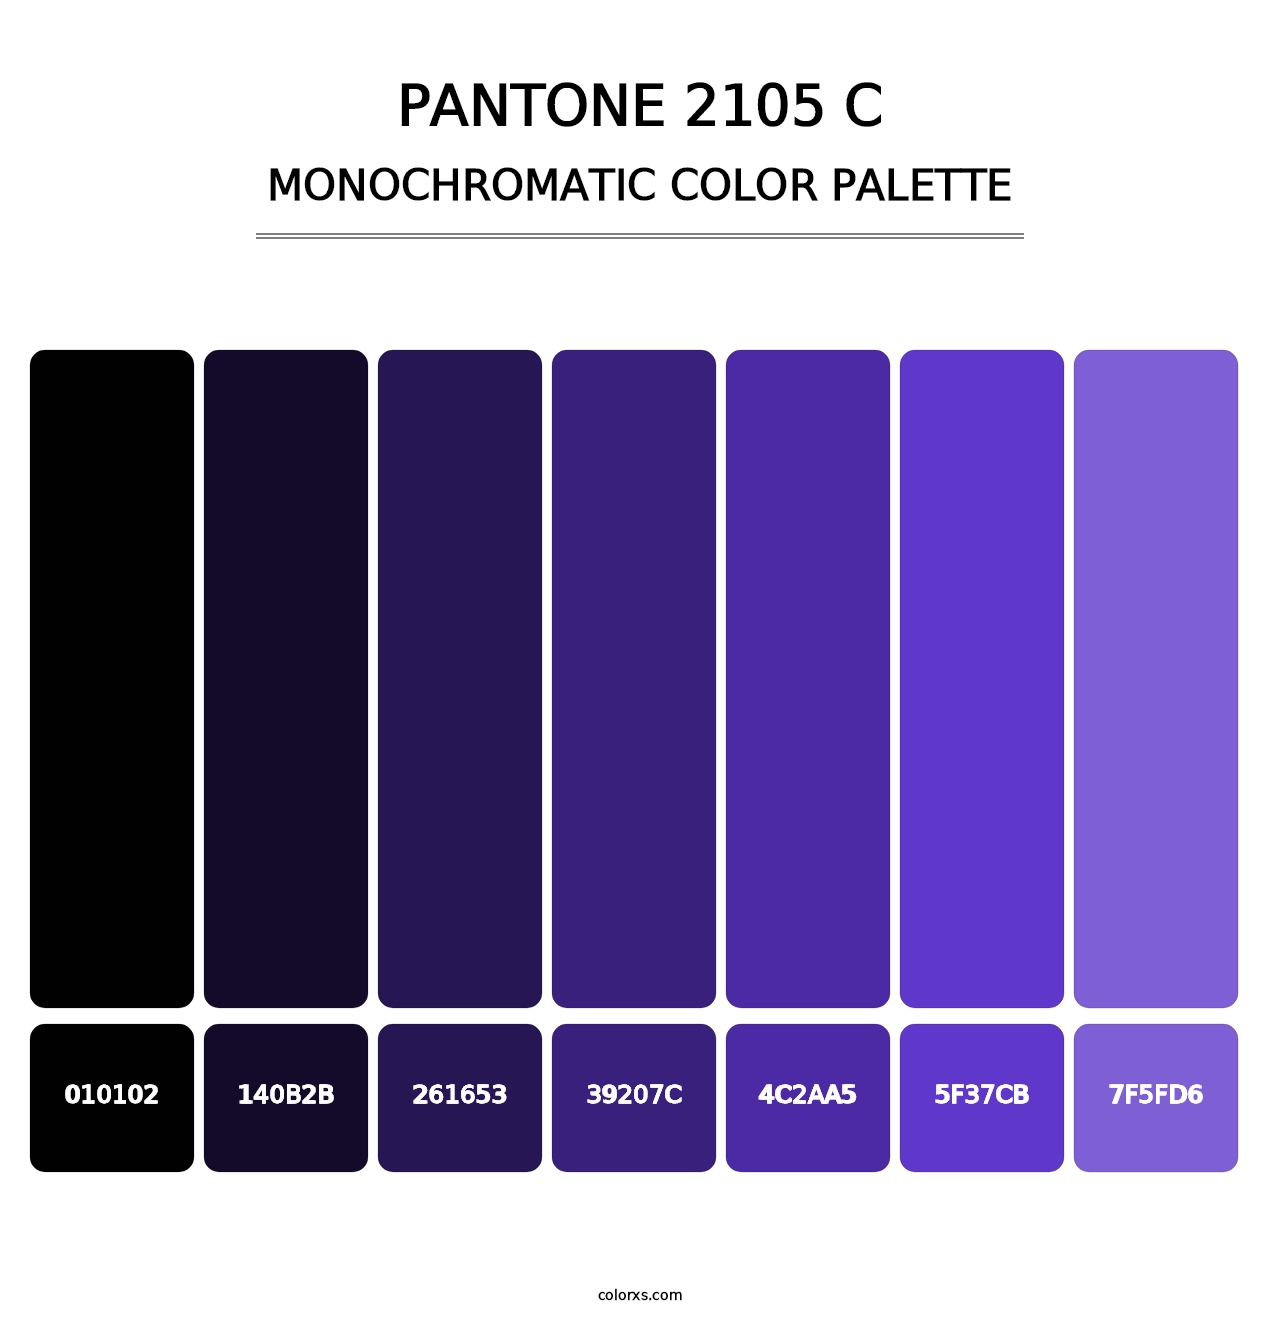 PANTONE 2105 C - Monochromatic Color Palette